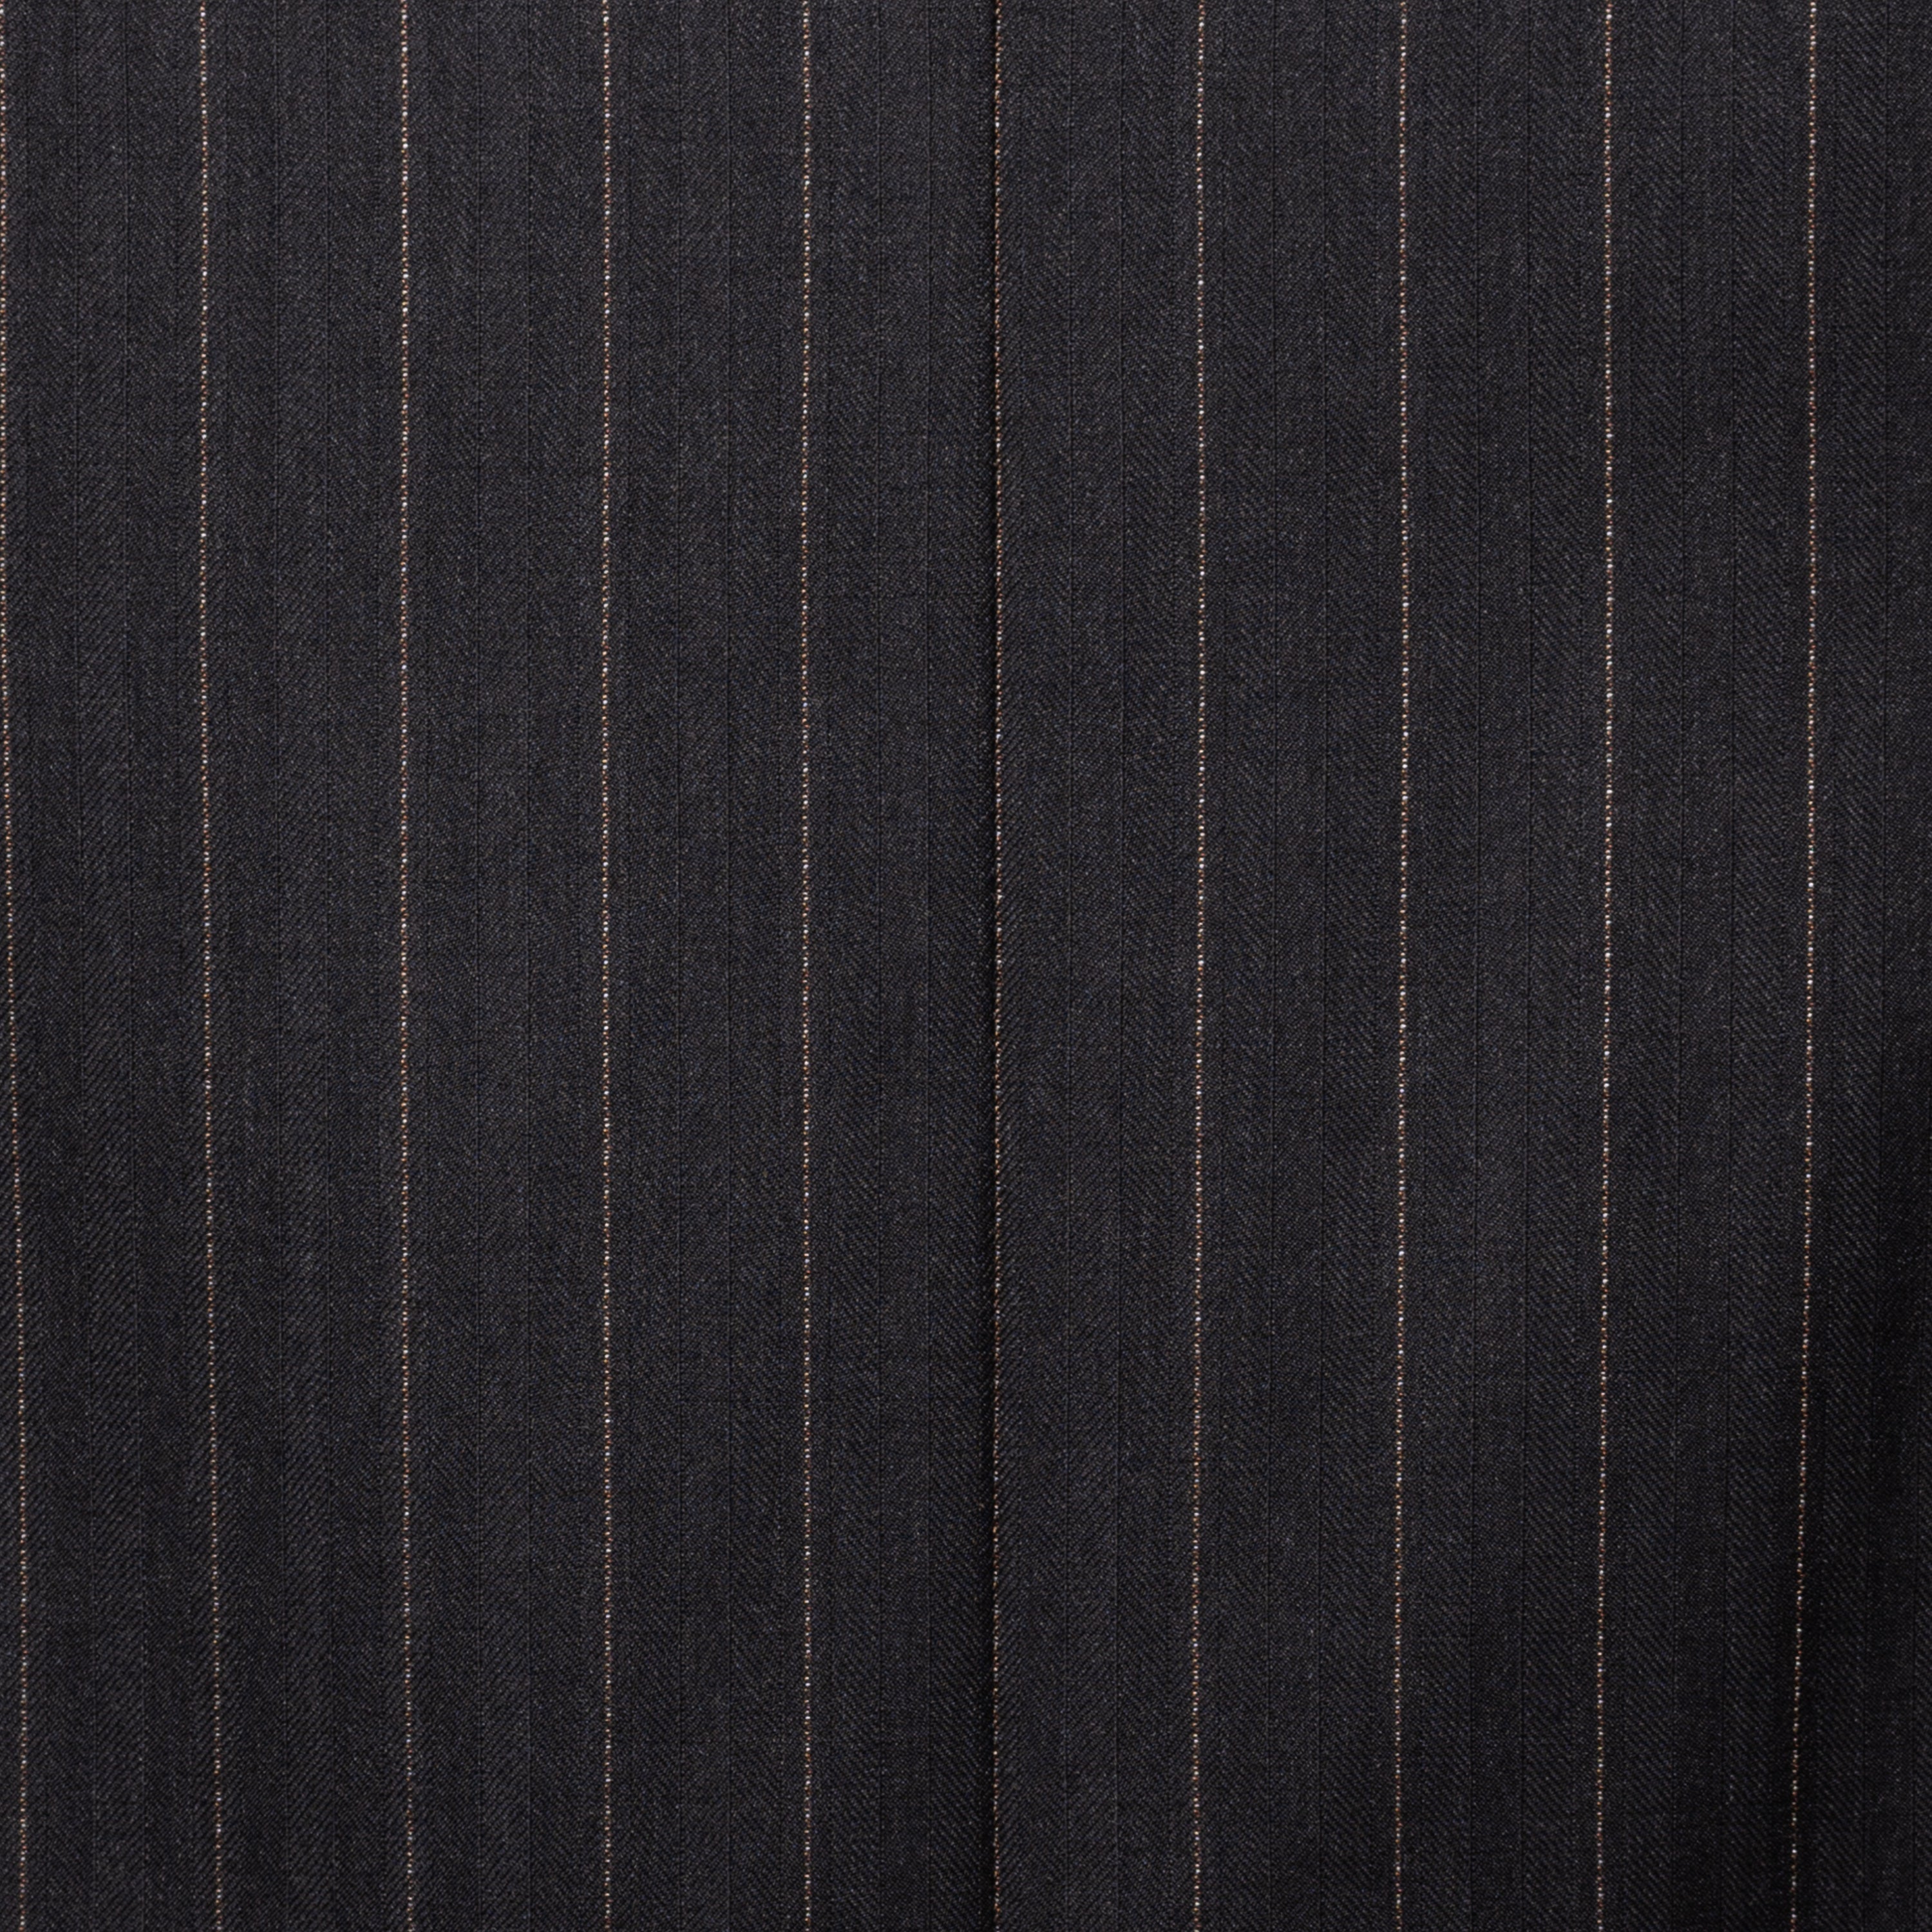 SARTORIA CASTANGIA Dark Gray Herringbone Wool Super 120's Suit EU 50 NEW US 40 CASTANGIA